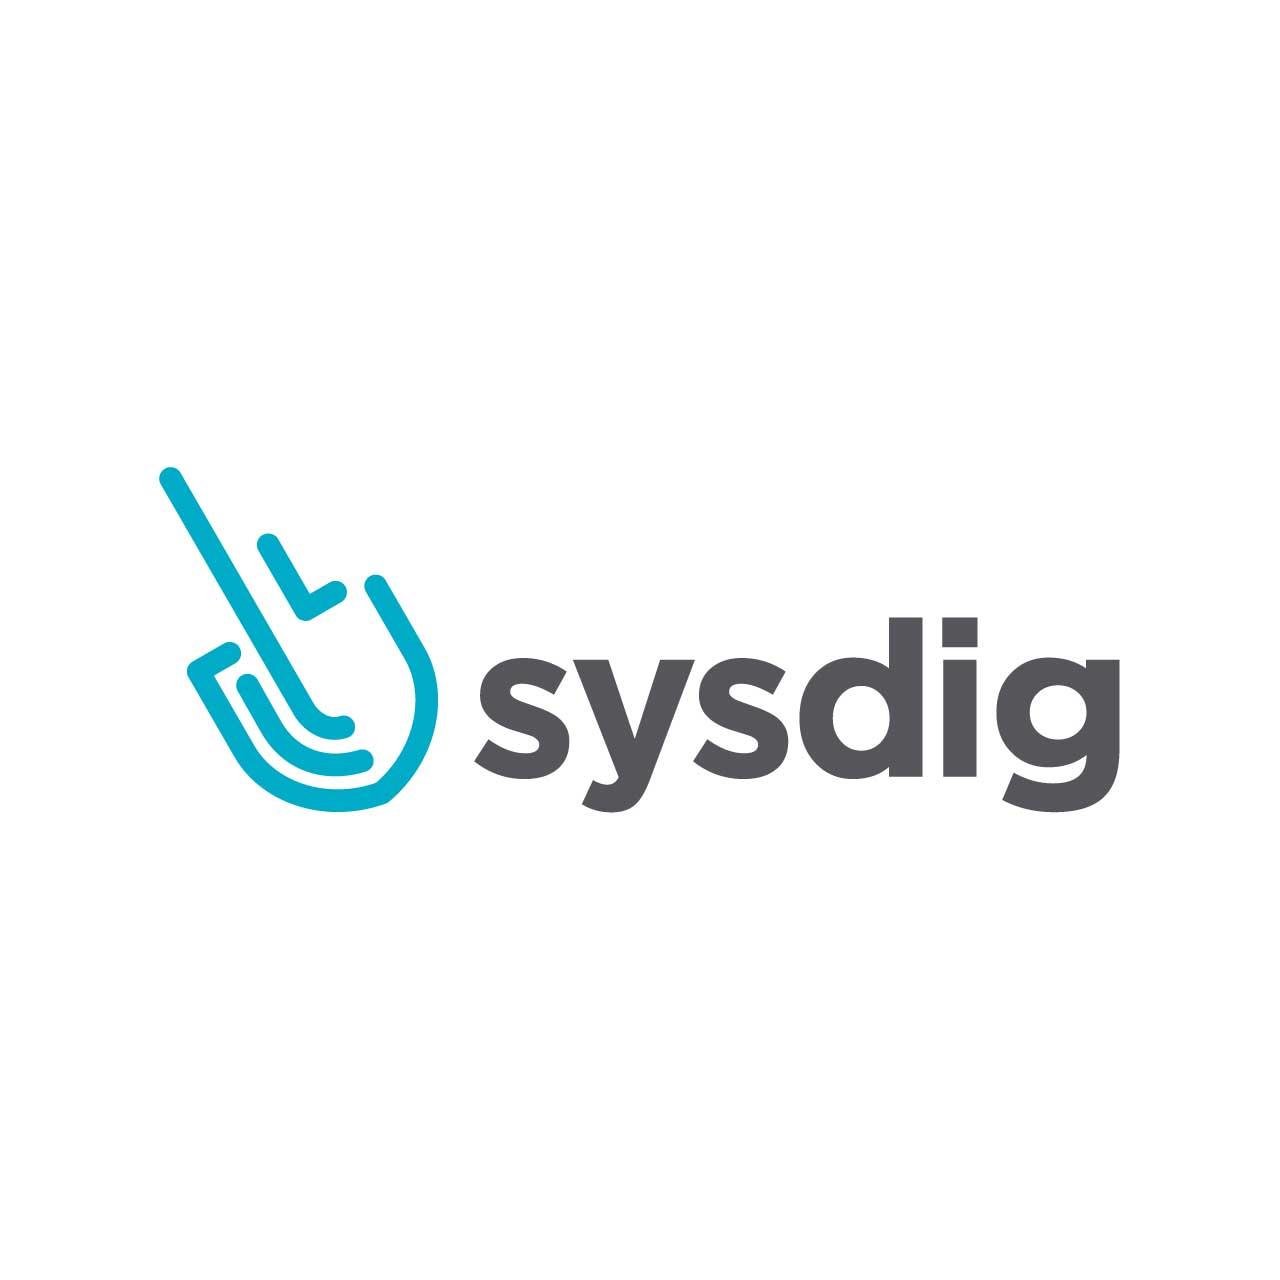 Sysdigの新機能 - 2020年12月